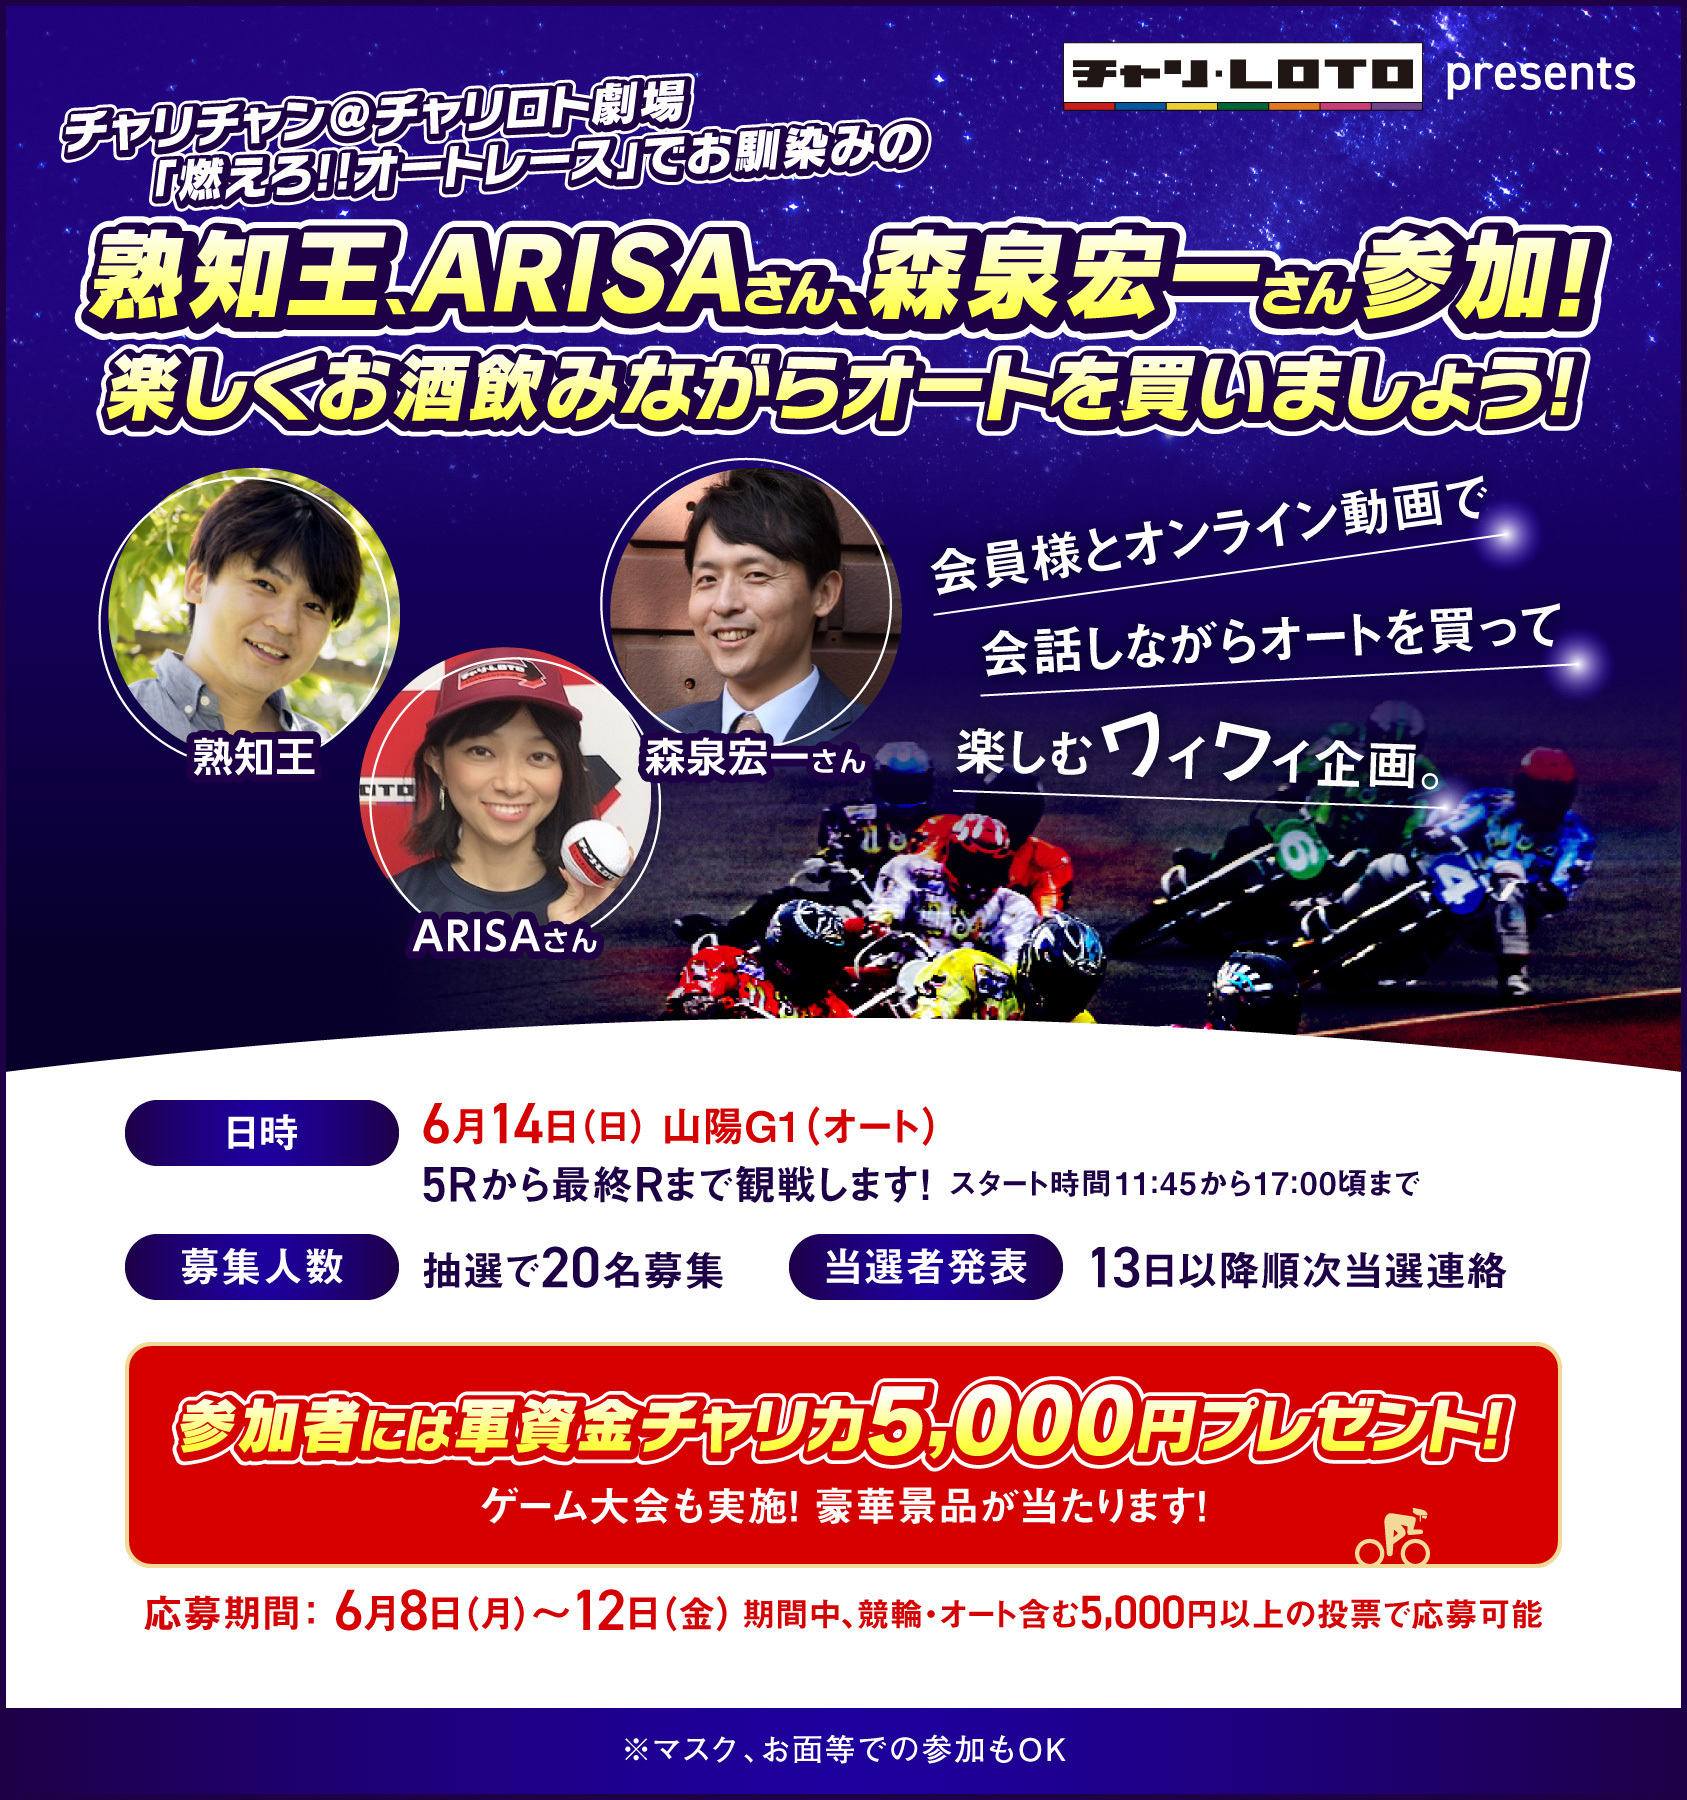 熟知王、ARISAさん、森泉宏一さんとオートレースオンライン観戦